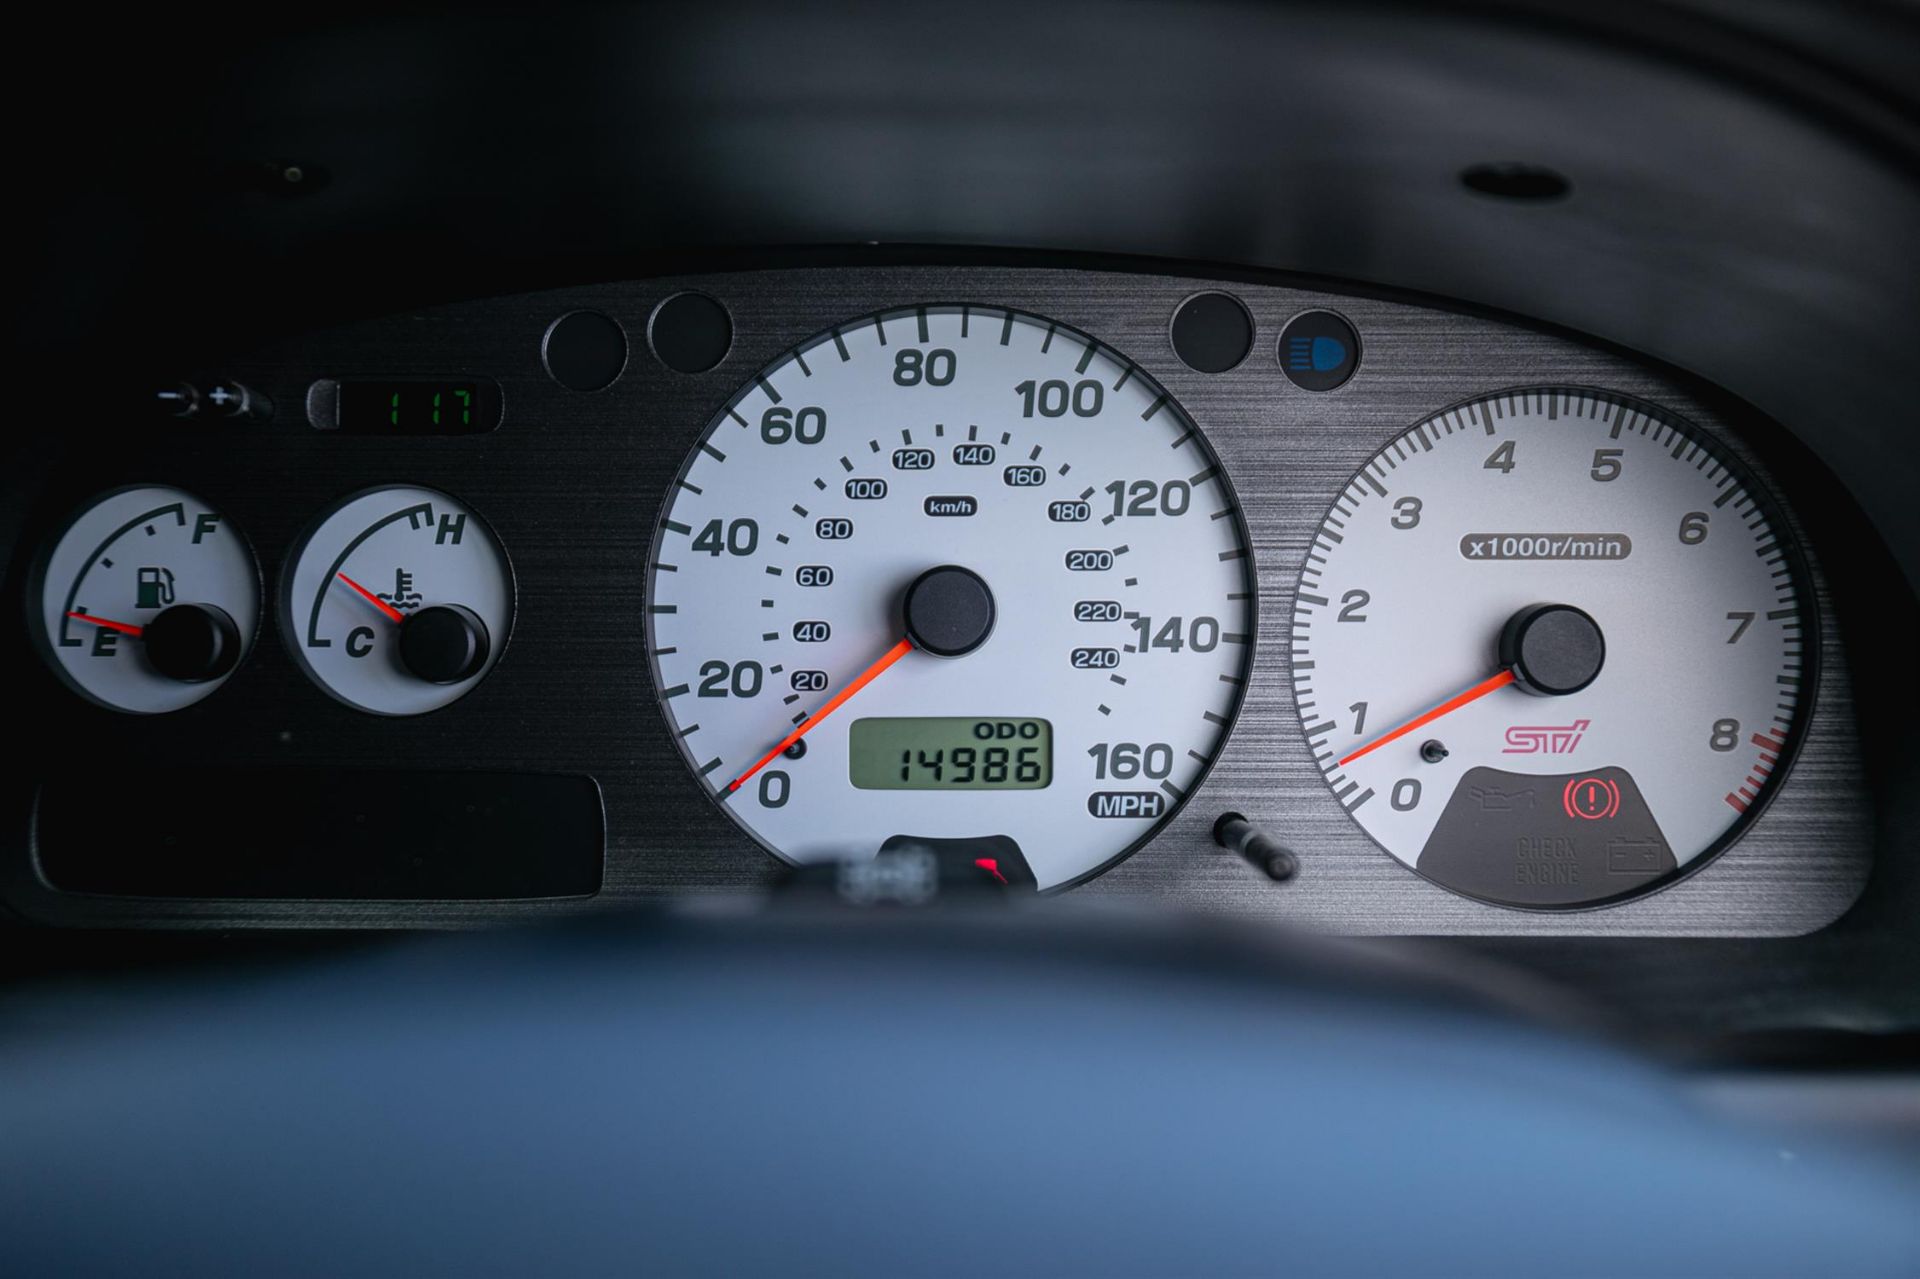 2001 Subaru Impreza P1 - 14,975 Miles - Image 8 of 10